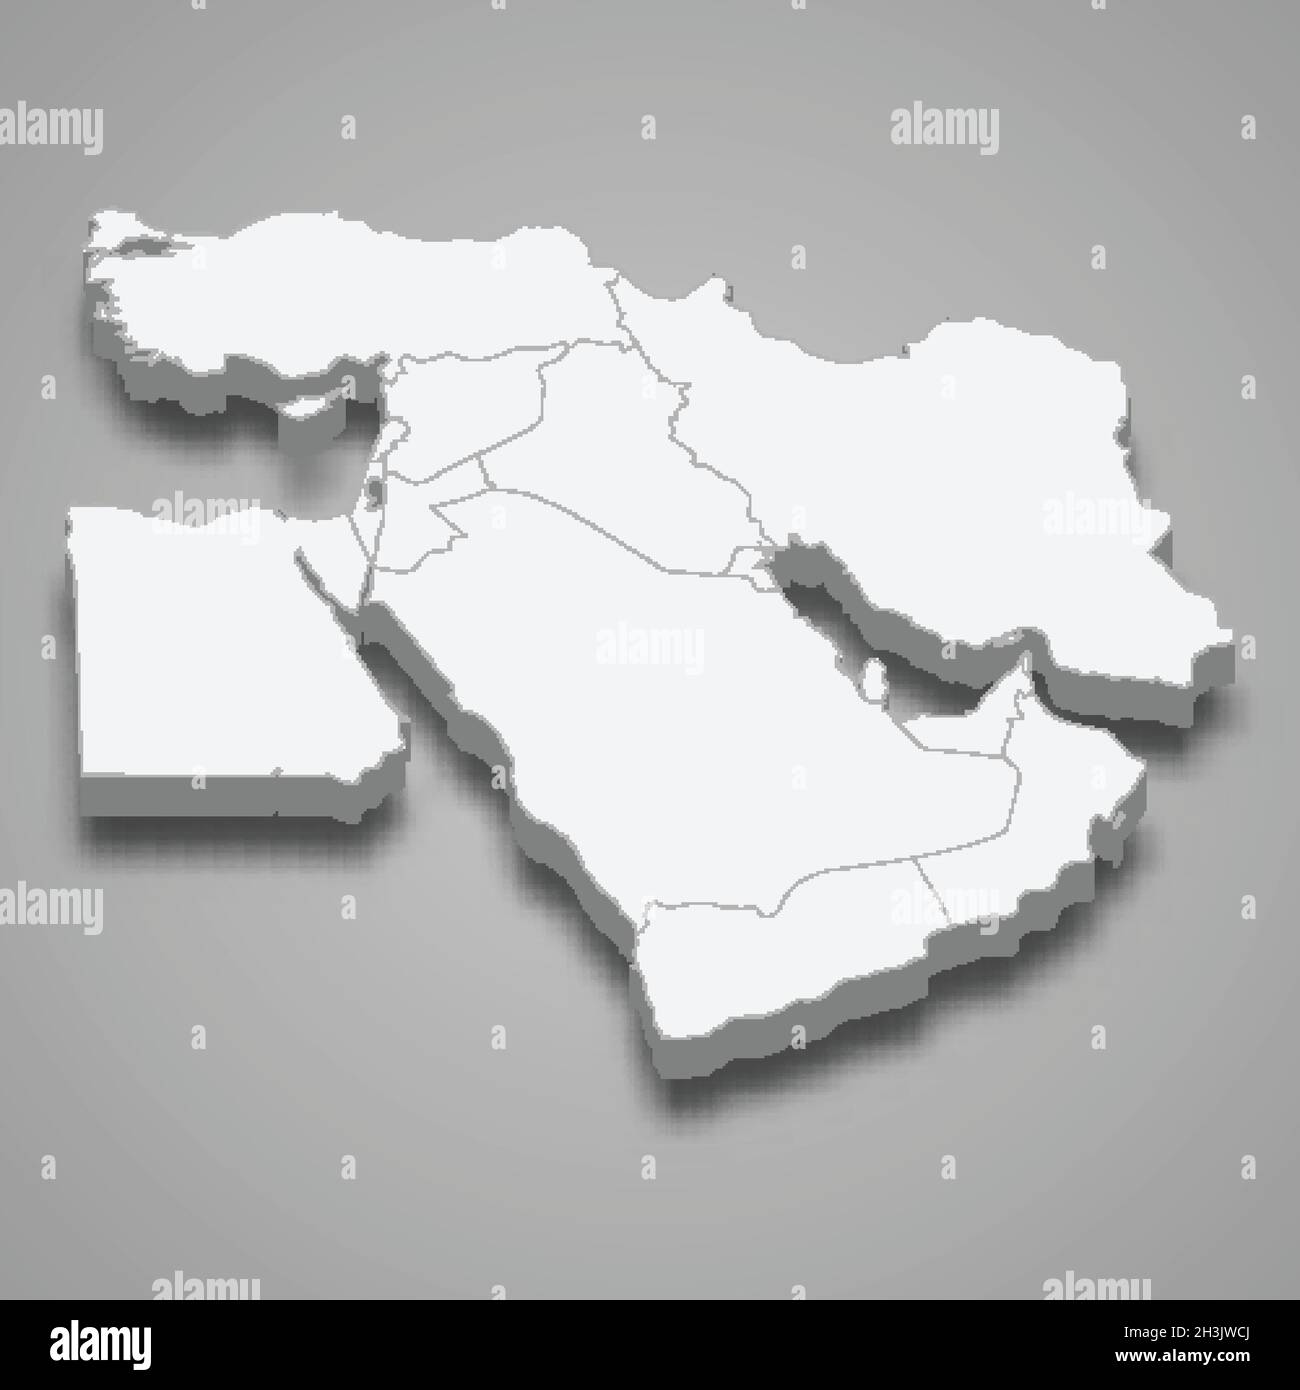 Carte isométrique 3d de la région du Moyen-Orient, isolée avec illustration du vecteur d'ombre Illustration de Vecteur